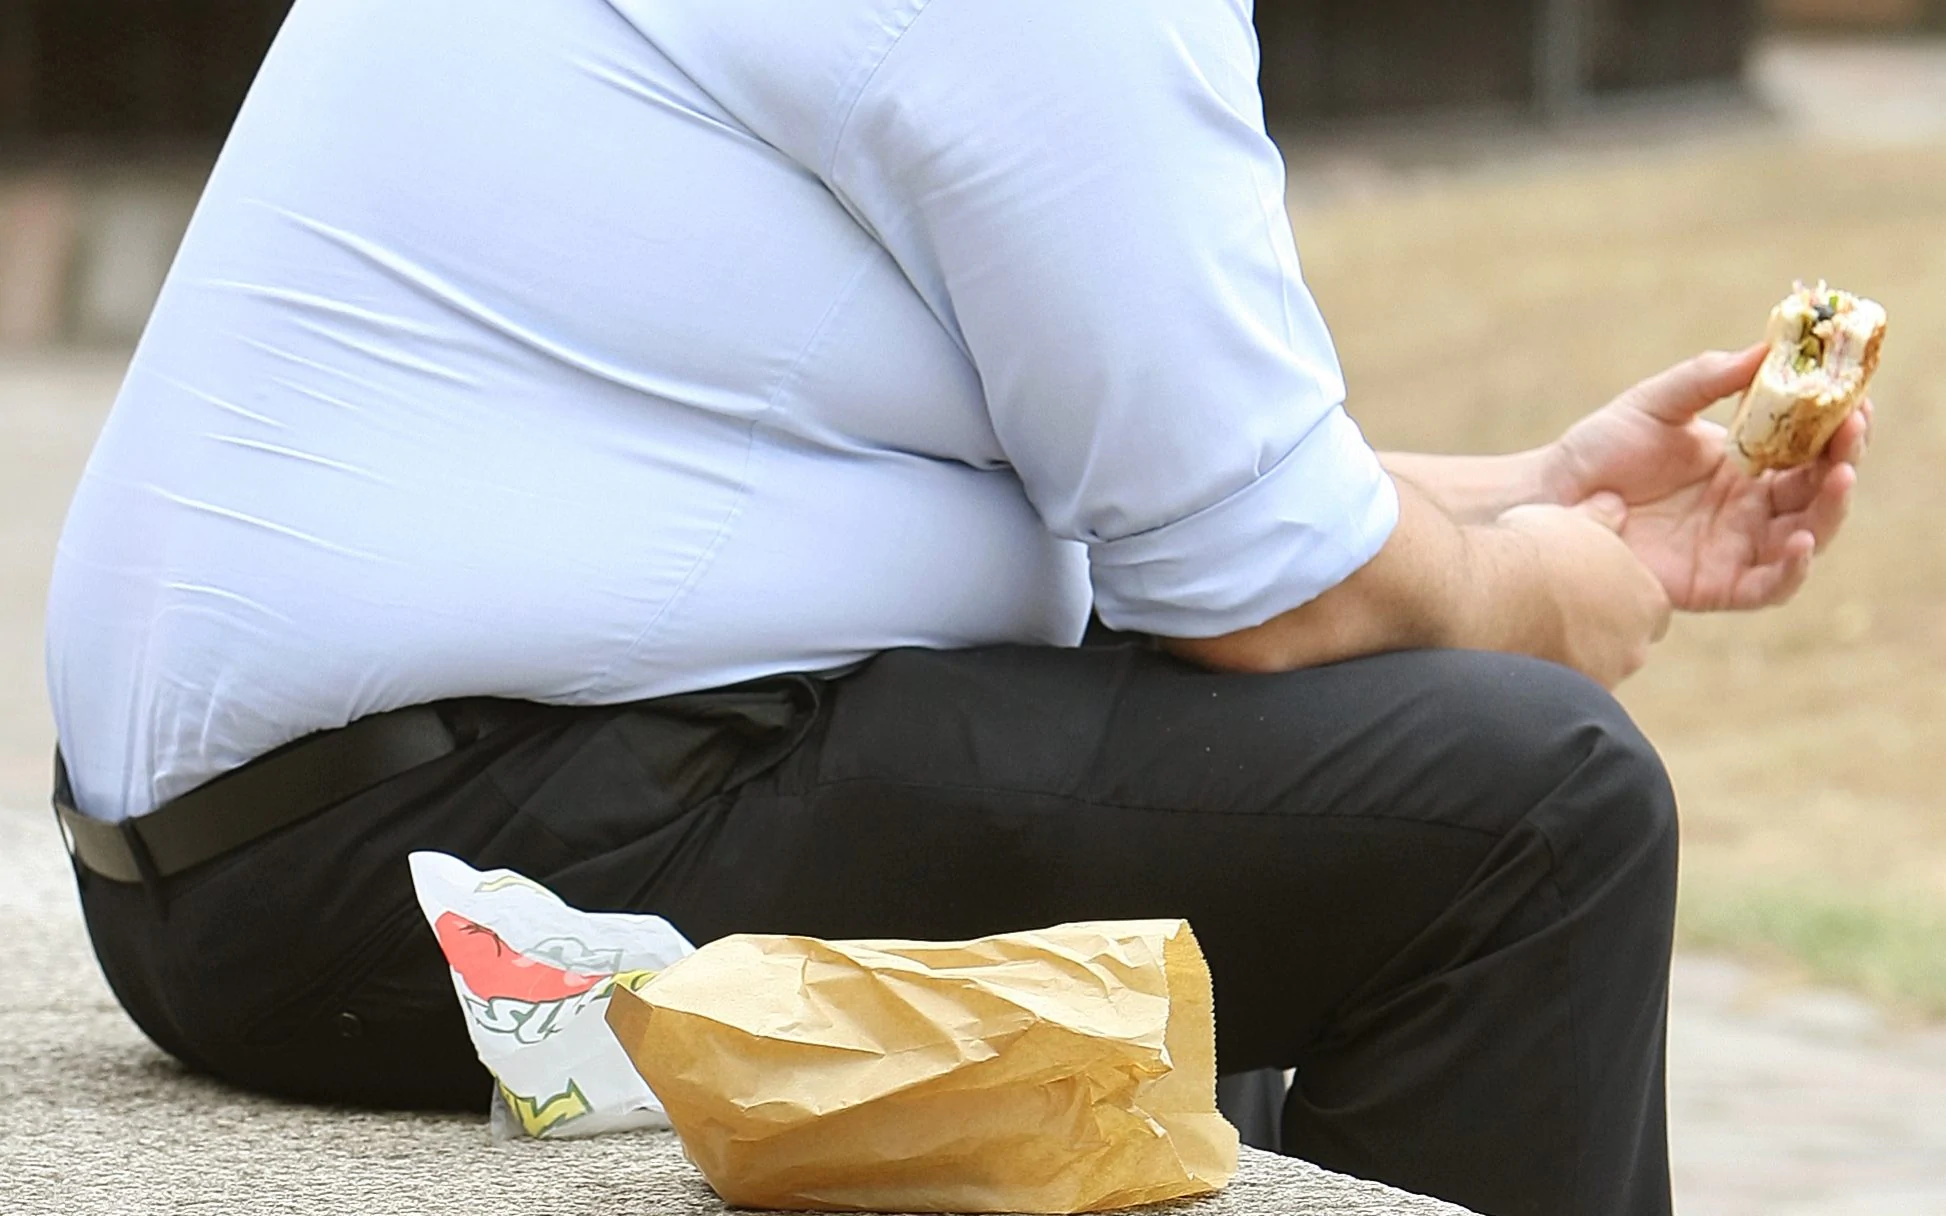 Τι συμβαίνει με την διατροφή μας; – Το ’70 οι άνθρωποι έτρωγαν περισσότερη ζάχαρη & κόκκινο κρέας αλλά σήμερα είναι παχύσαρκοι!